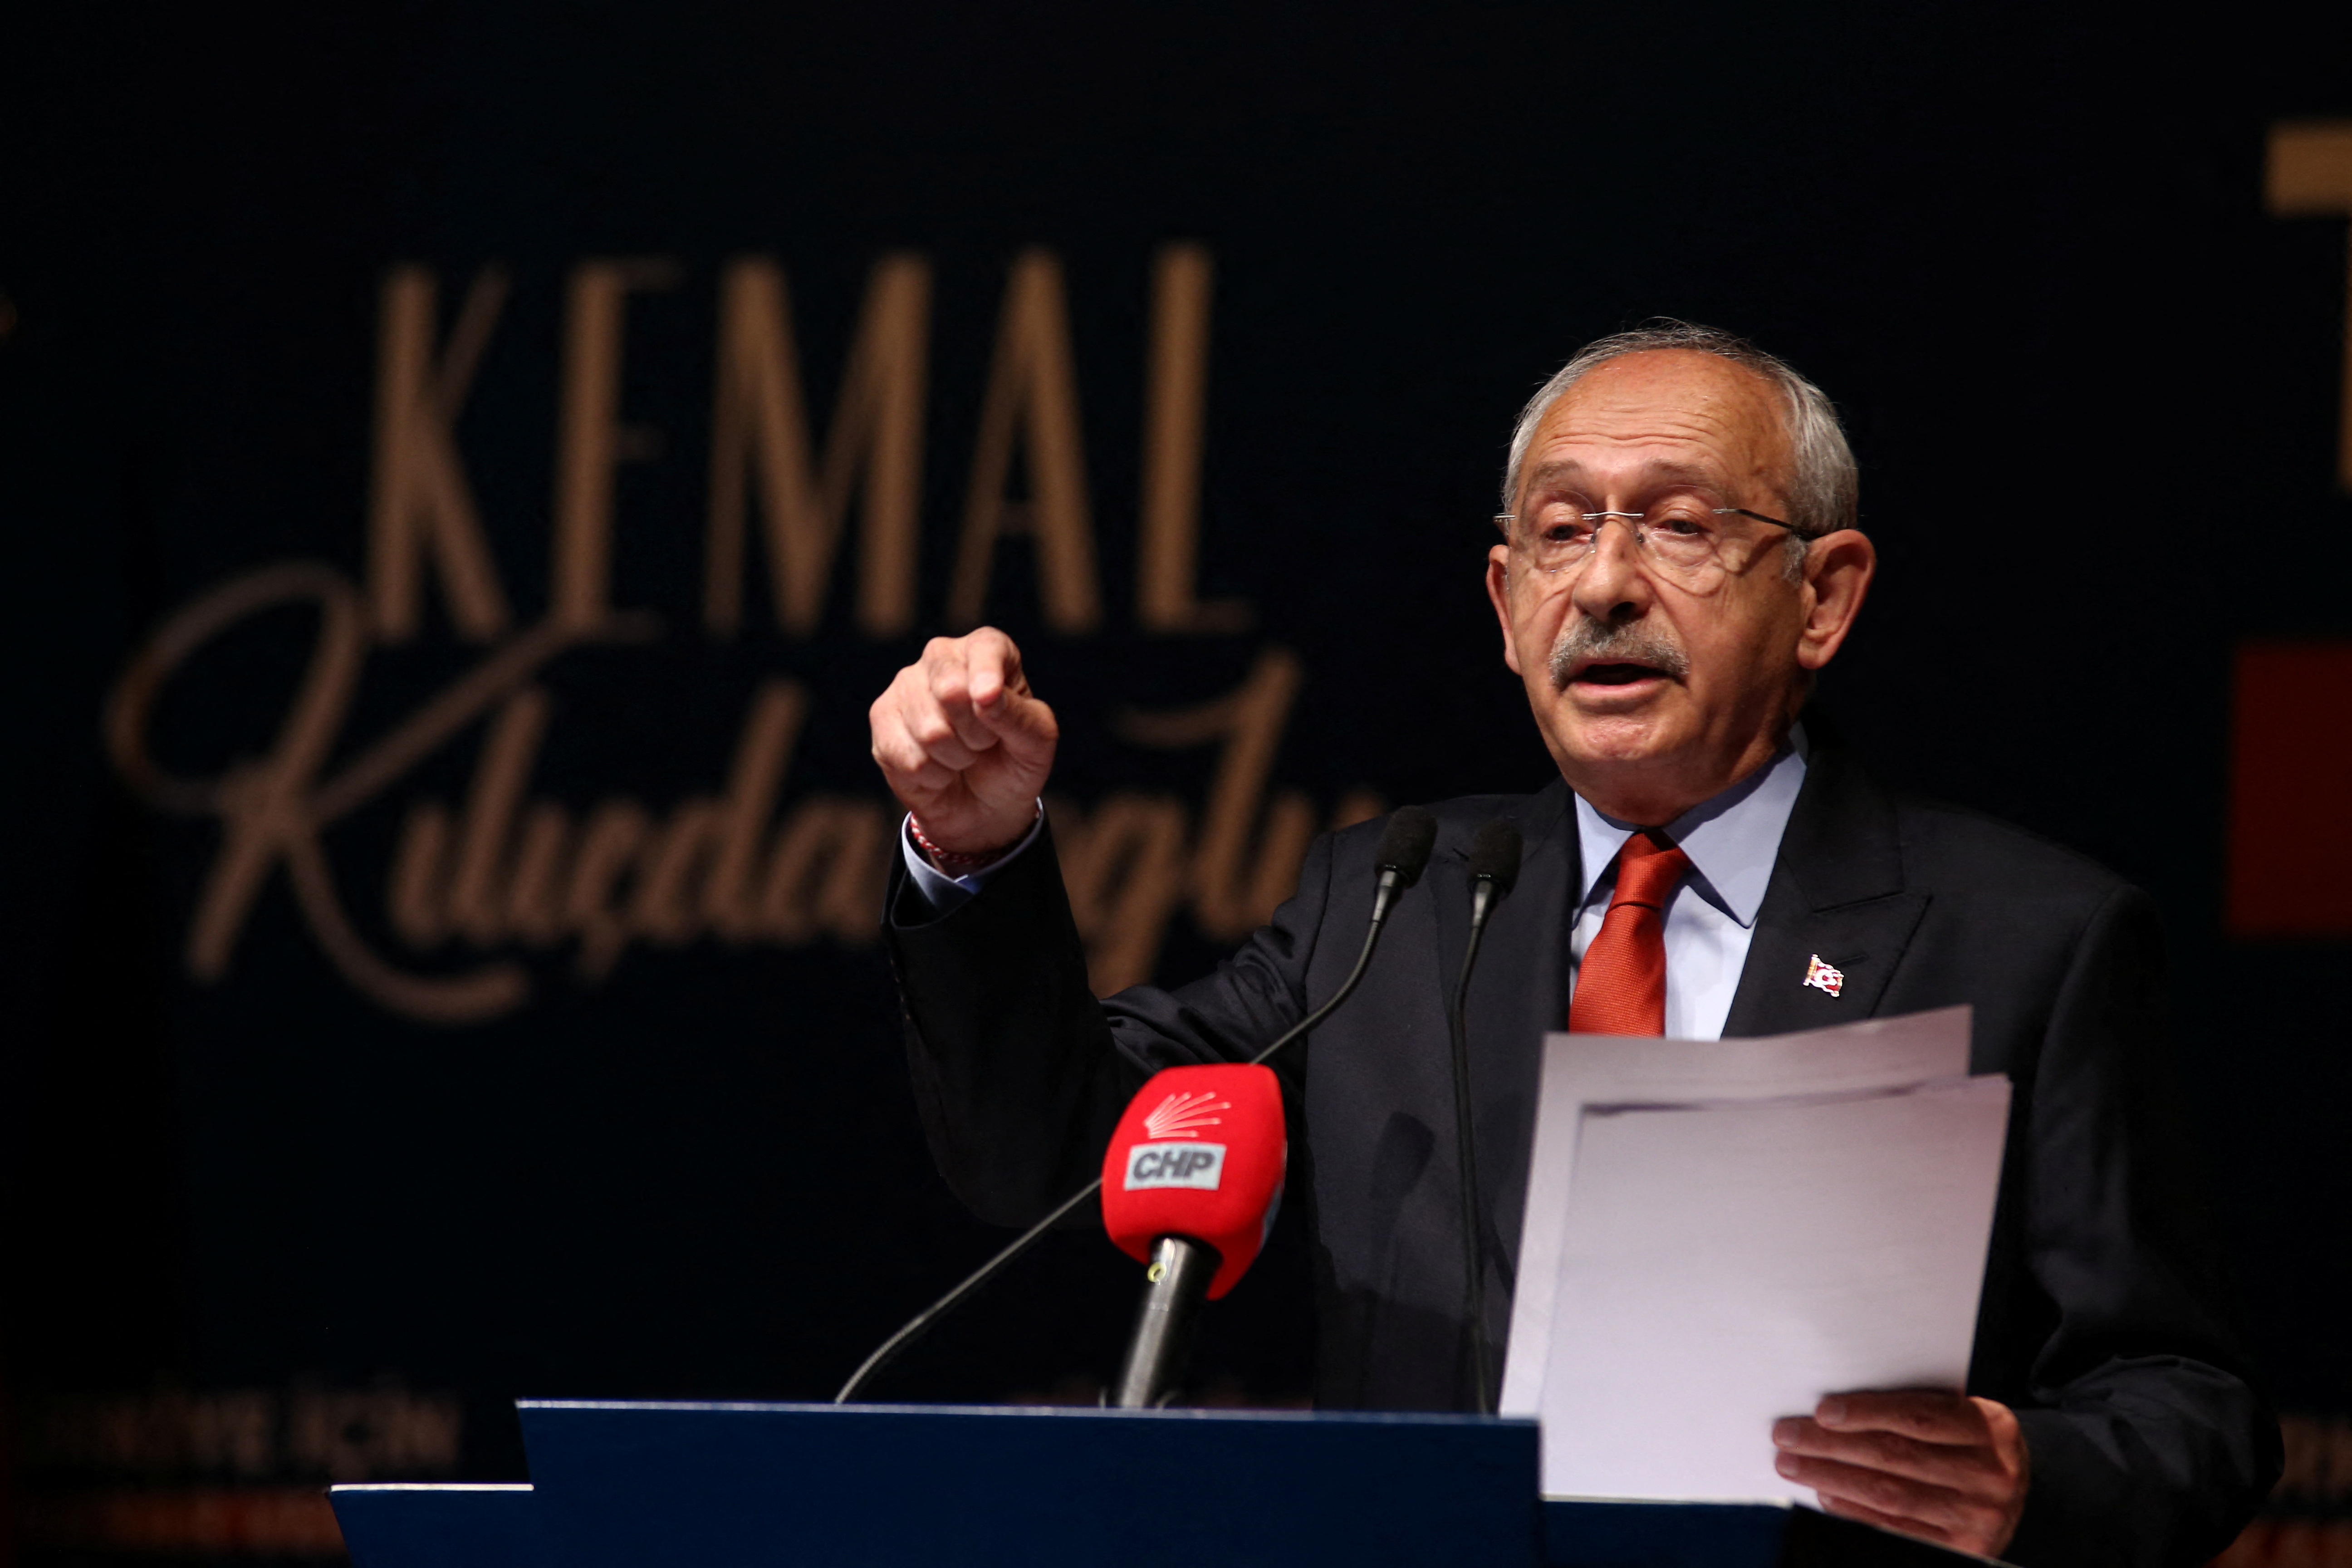 El socialdemócrata Kemal Kiliçdaroglu buscar dar el golpe en el ballotage y arrebatarle el poder al presidente Recep Erdogan (REUTERS/Cagla Gurdogan)